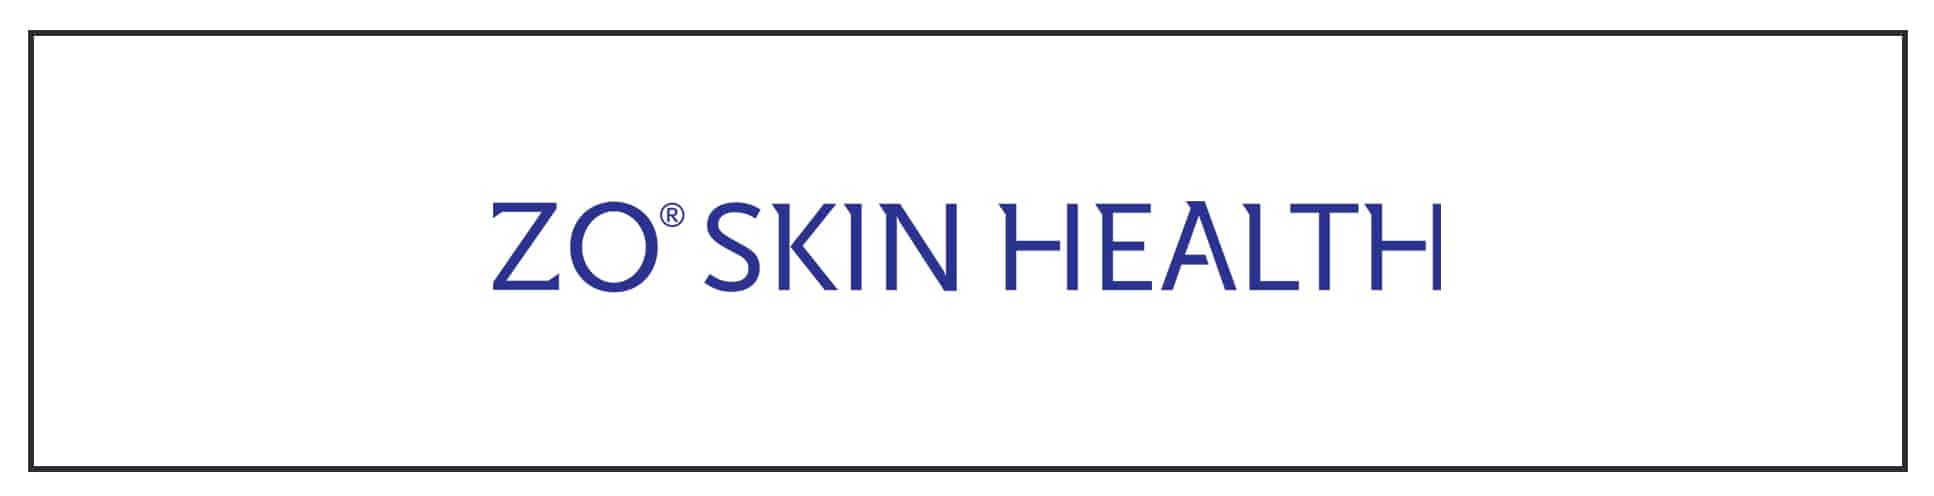 Zo skin health logo on a white background.